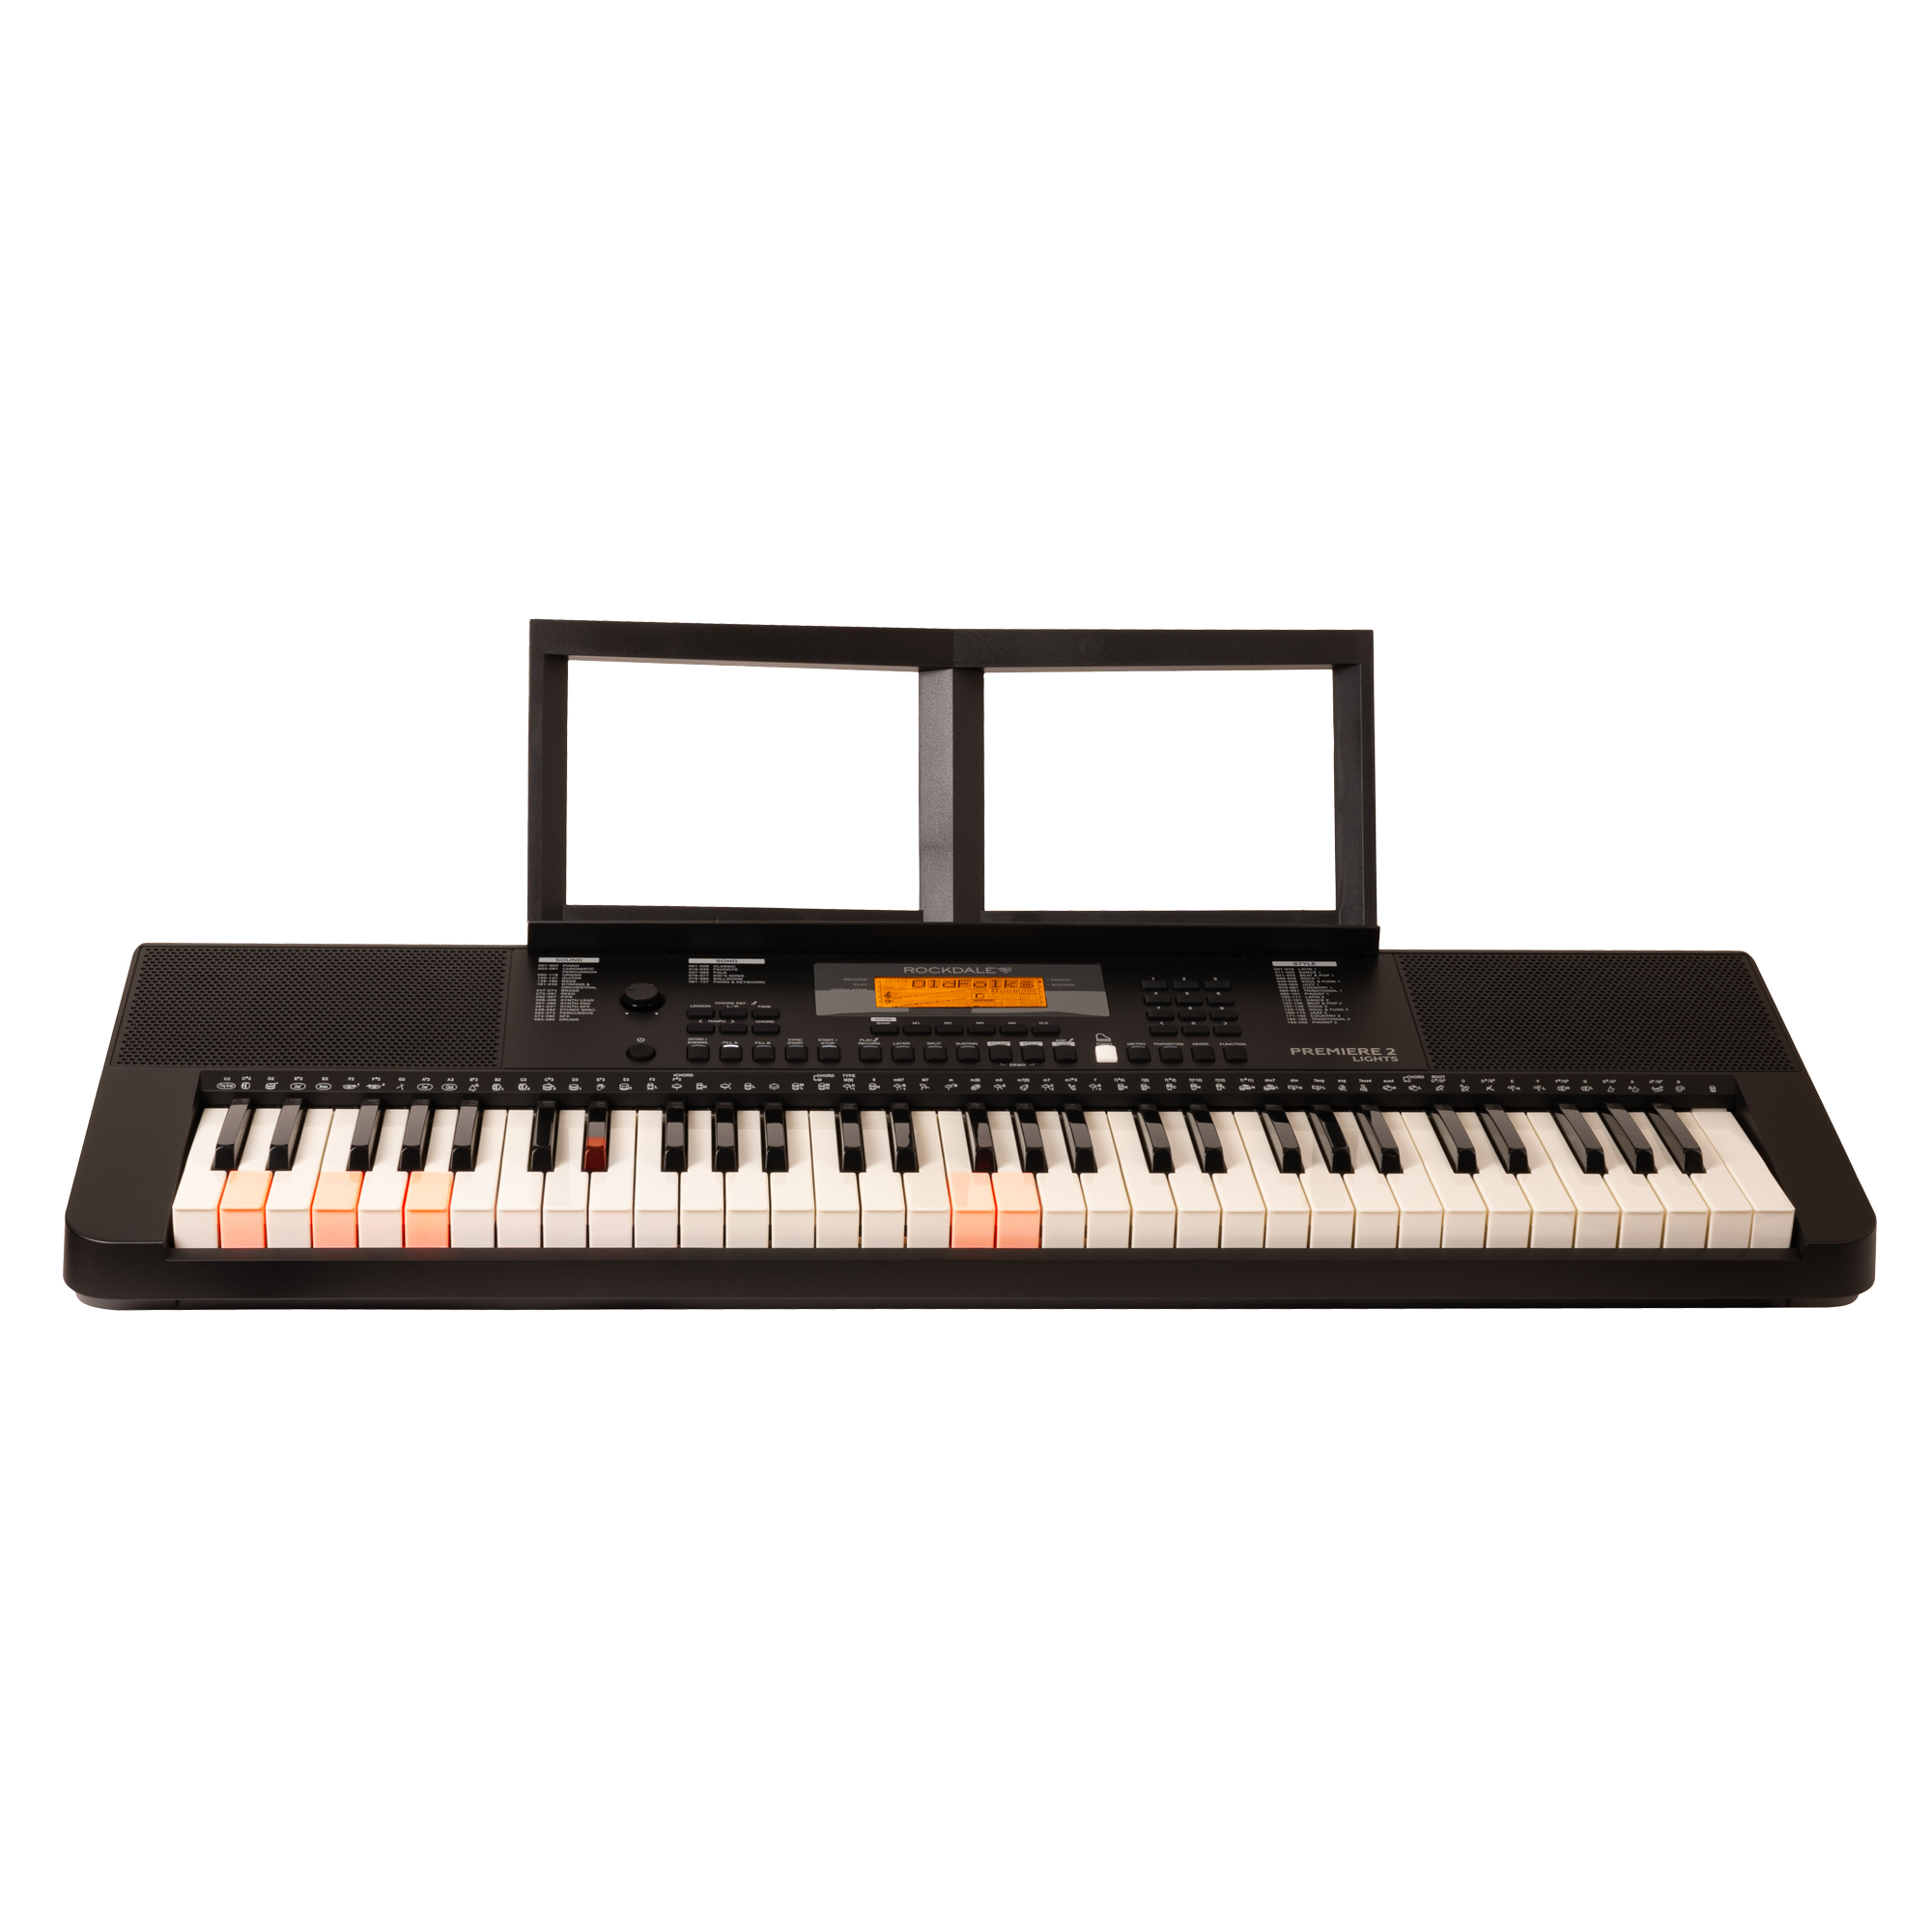 ROCKDALE Premiere 2 Lights - синтезатор с подсветкой клавиш, 61 клавиша